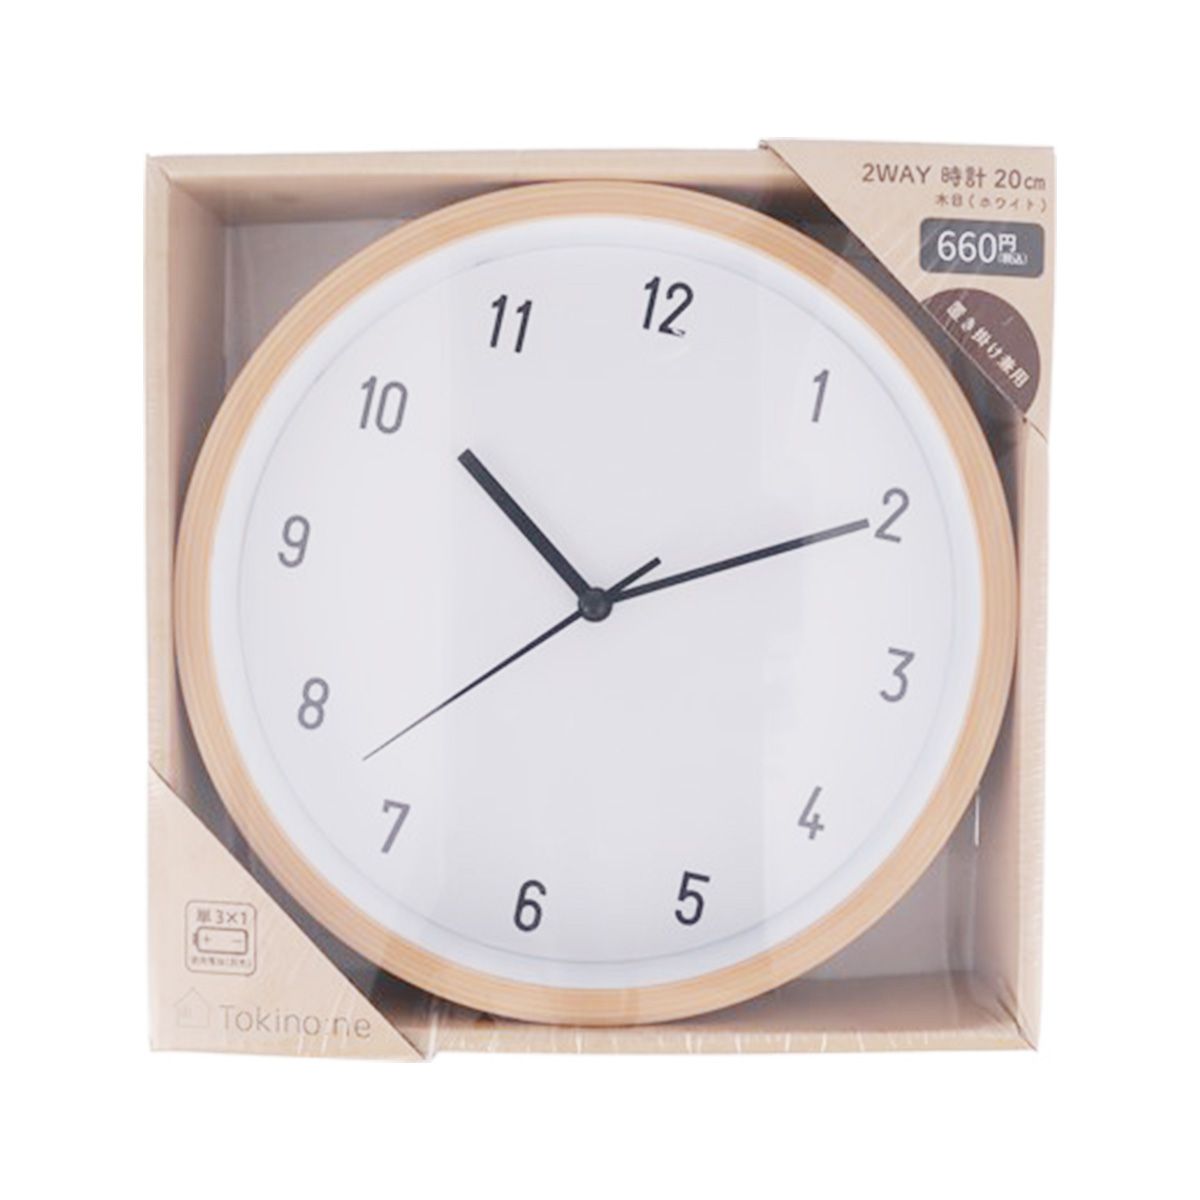 壁掛け時計 ウォールクロック 置き時計 Tokinone PB.2WAY時計20cm 木目ホワイト 062506